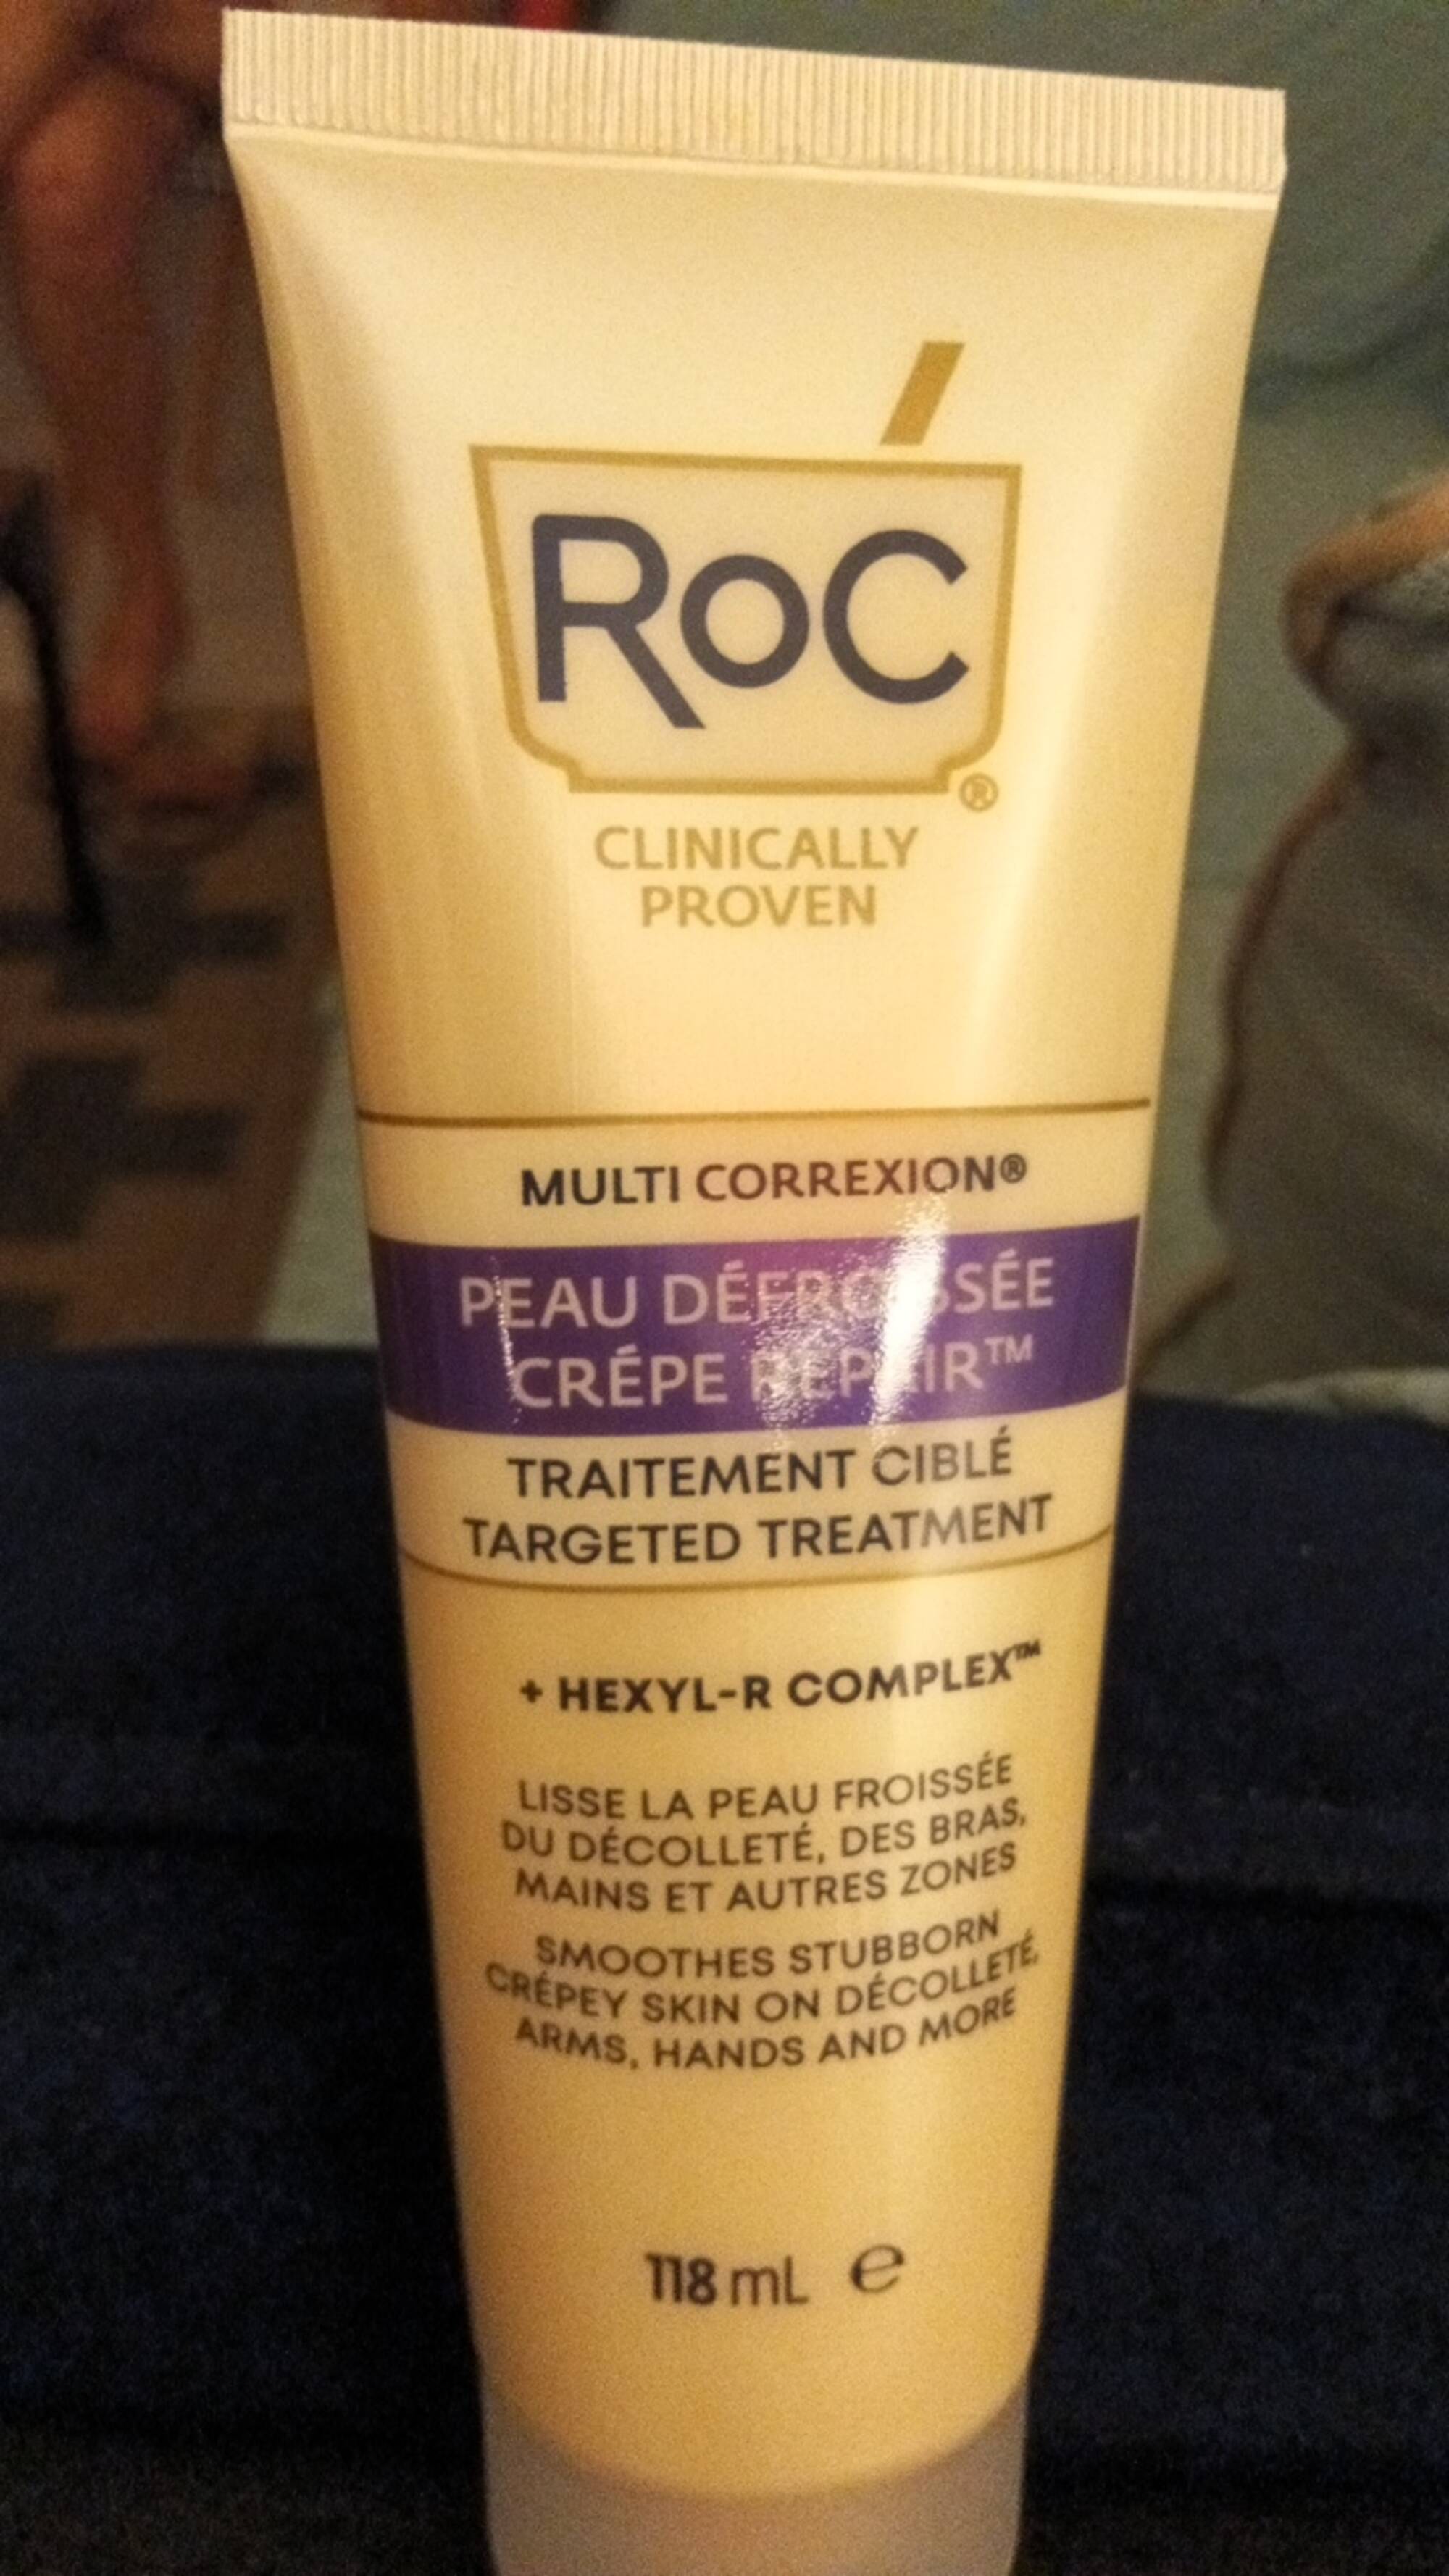 ROC - Multi correxion - Traitement ciblé peau défroissée